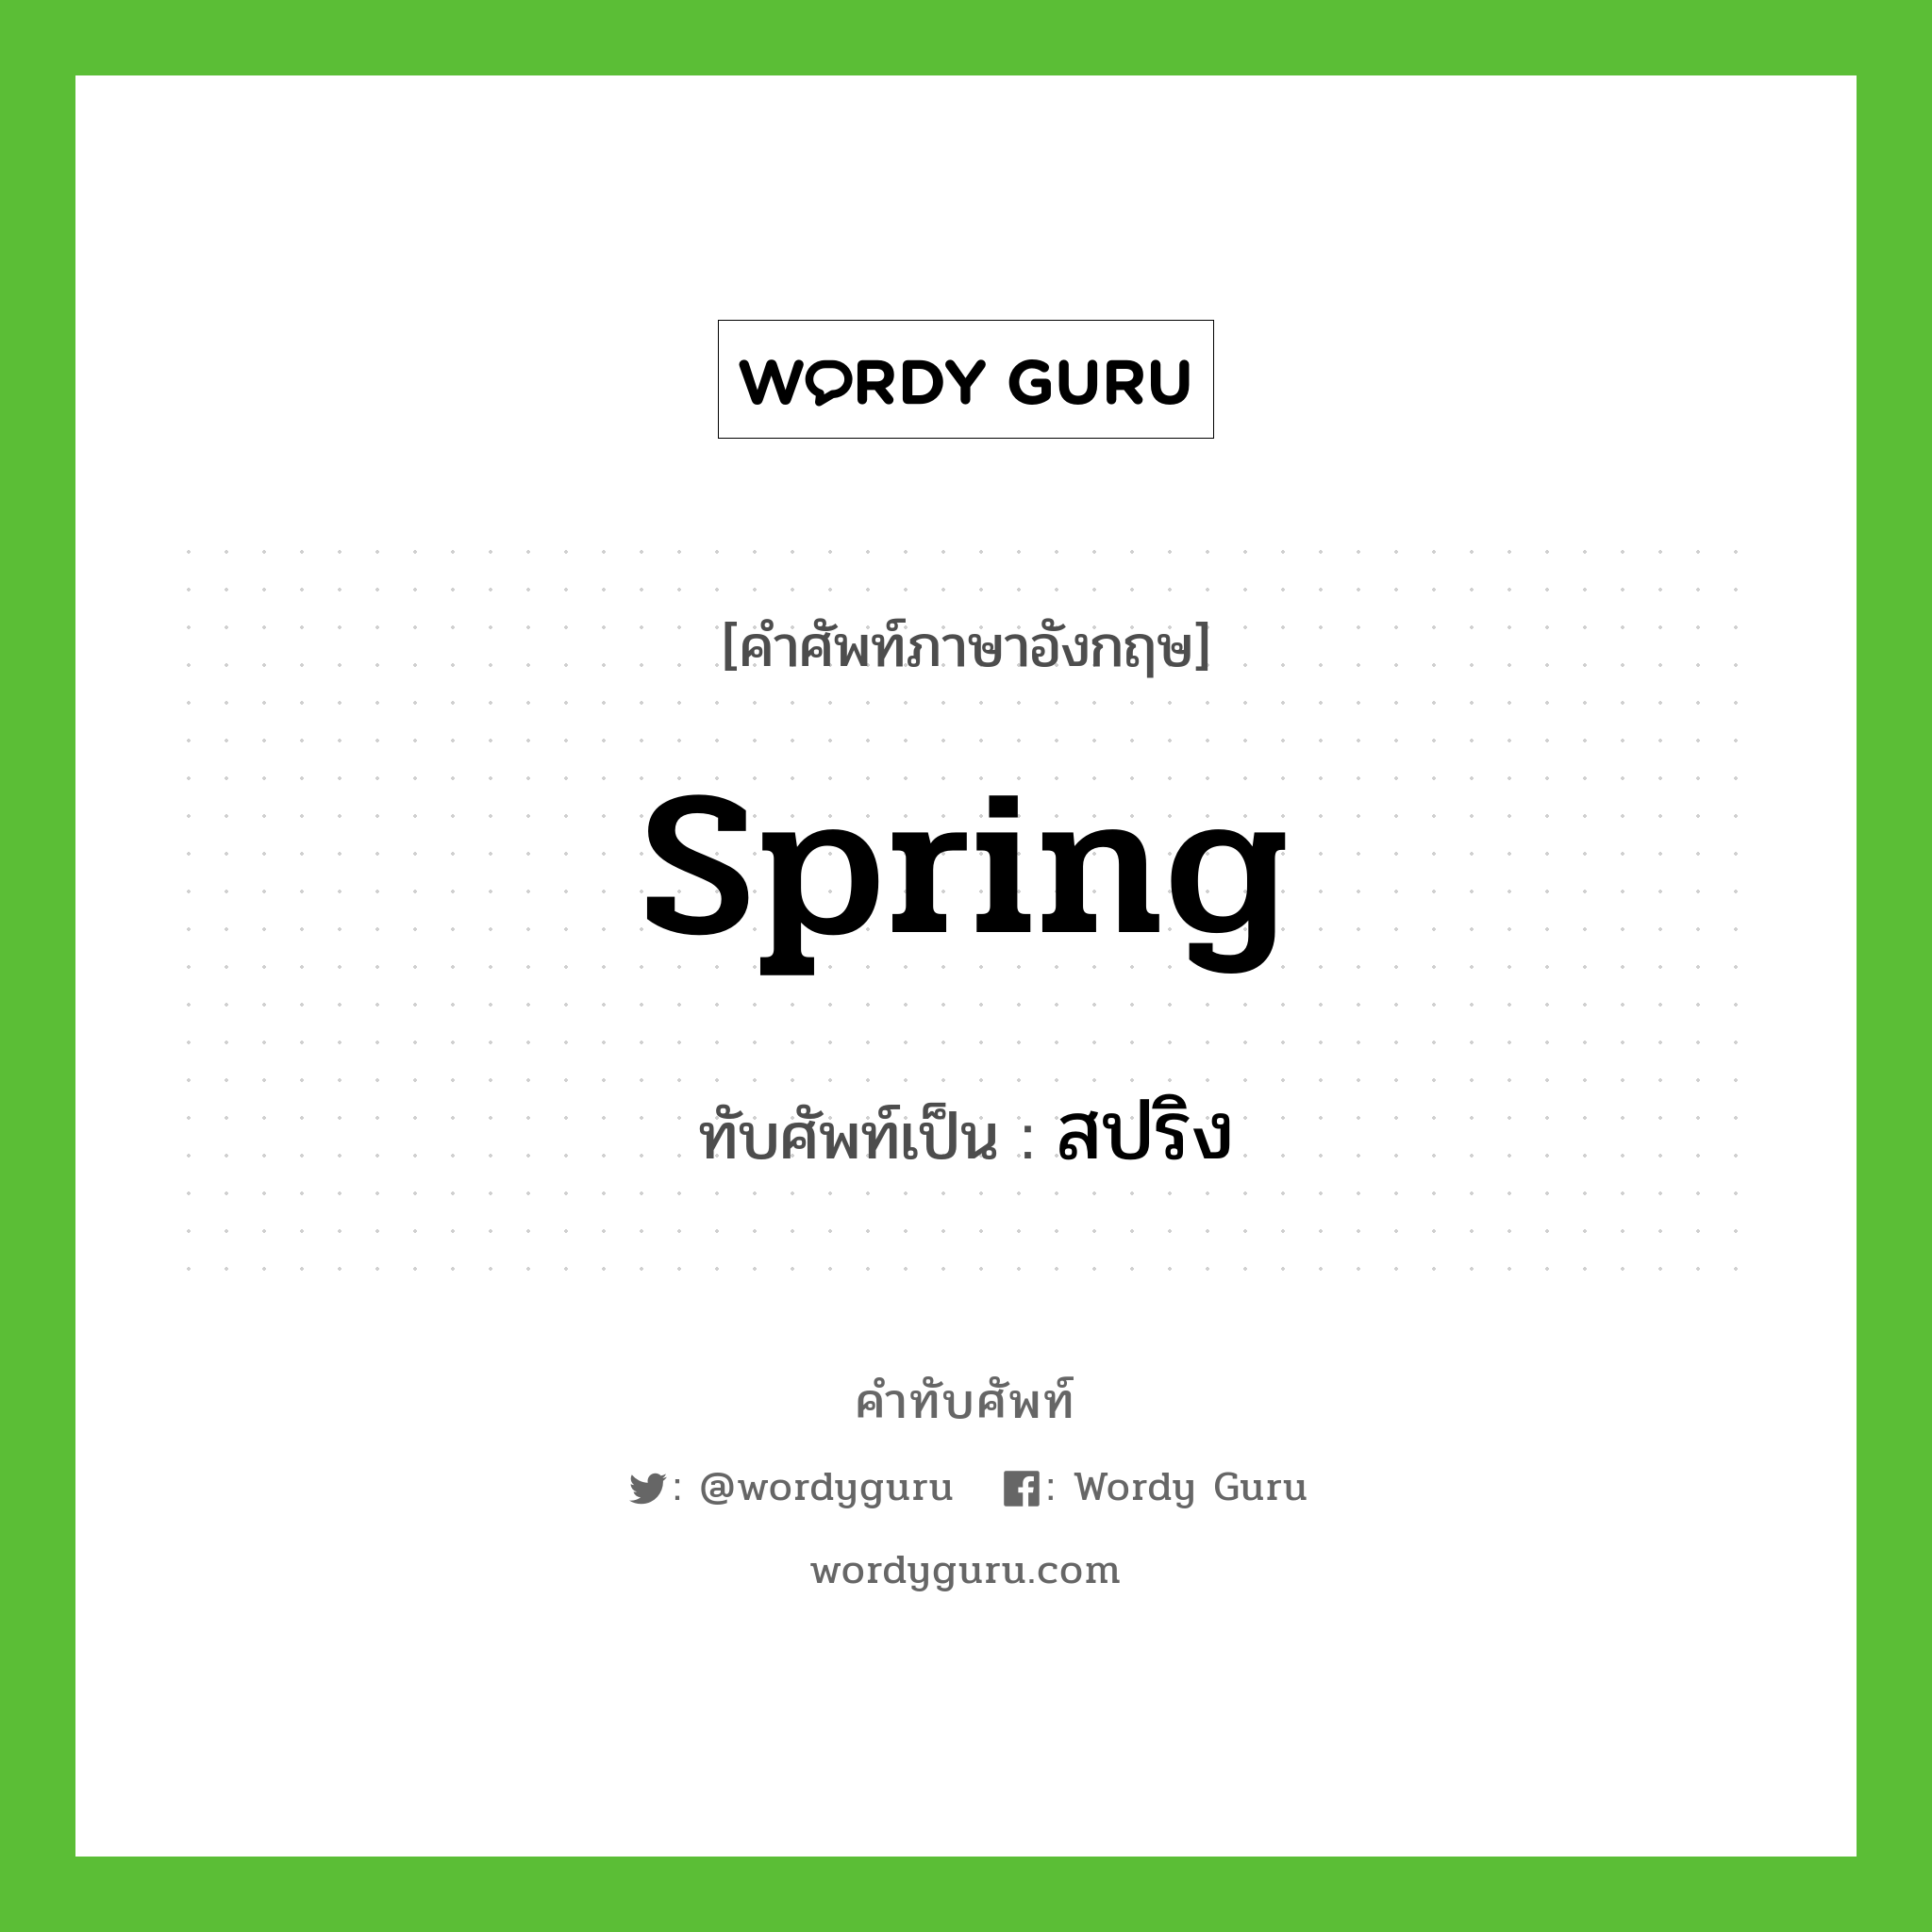 spring เขียนเป็นคำไทยว่าอะไร?, คำศัพท์ภาษาอังกฤษ spring ทับศัพท์เป็น สปริง